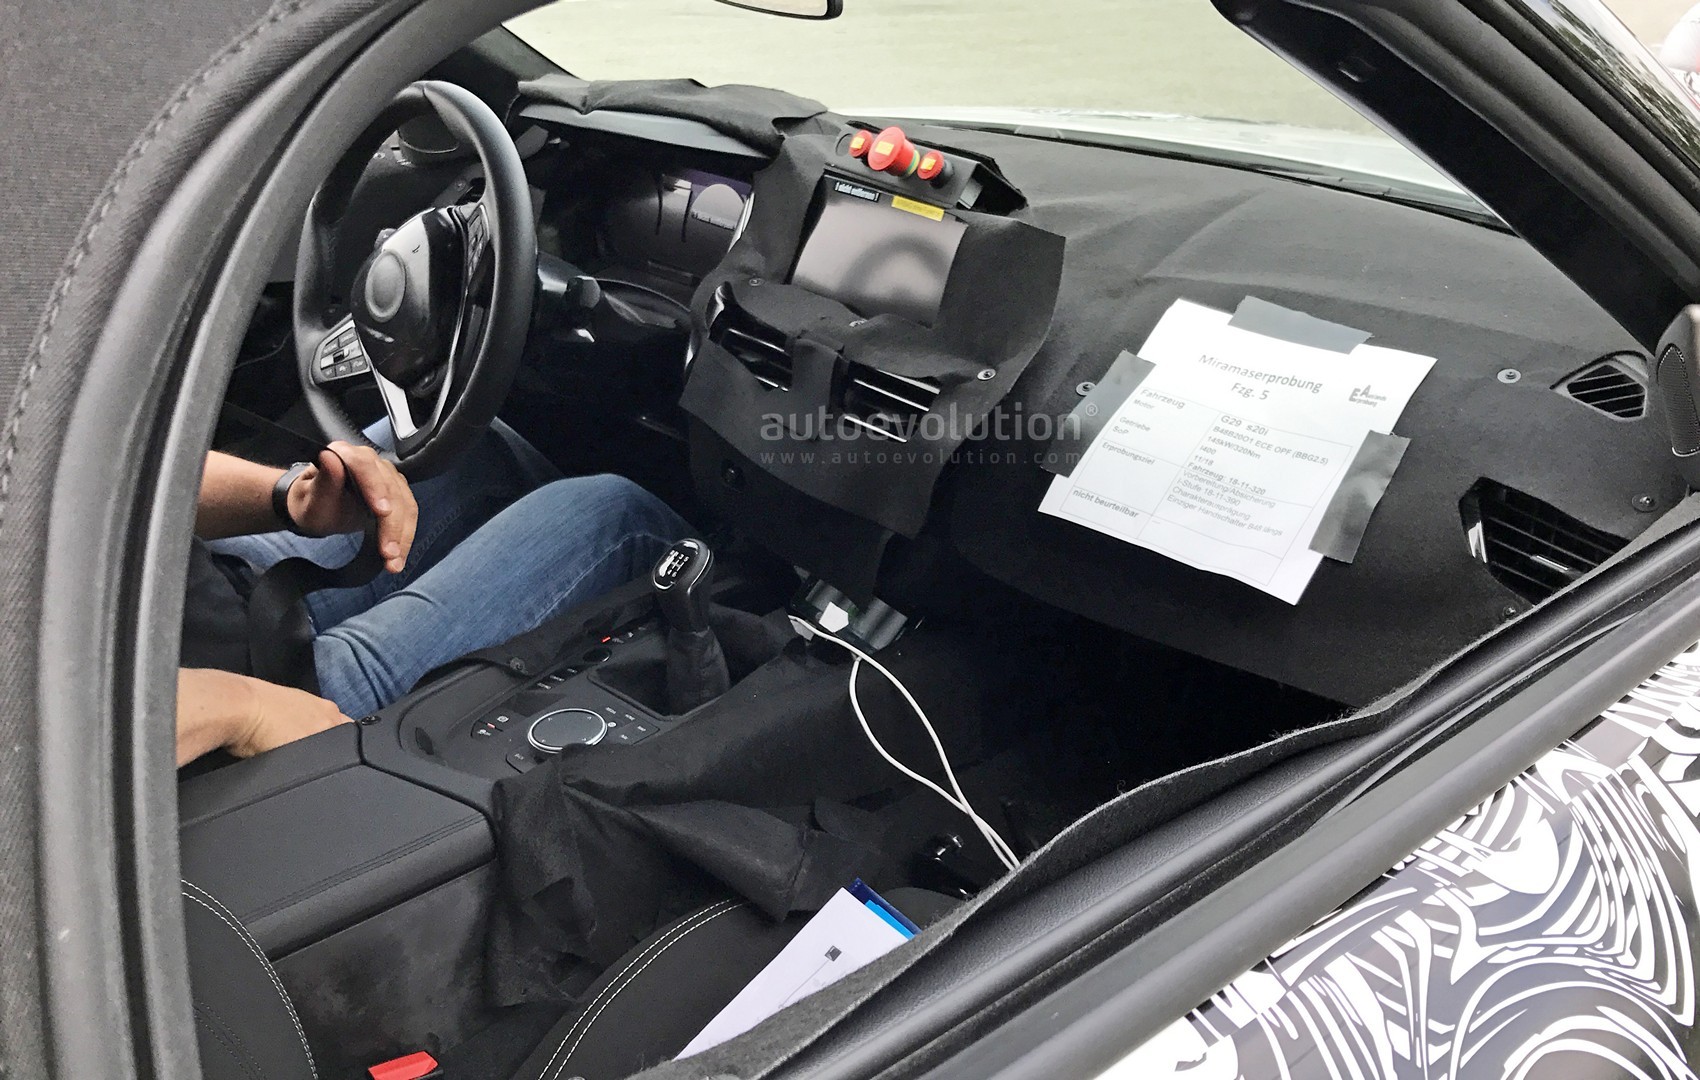 2018 - [BMW] Z4 (G29) - Page 2 2018-bmw-z4-s20i-interior-spyshots-reveal-specs-and-6-speed-manual-gearbox_1